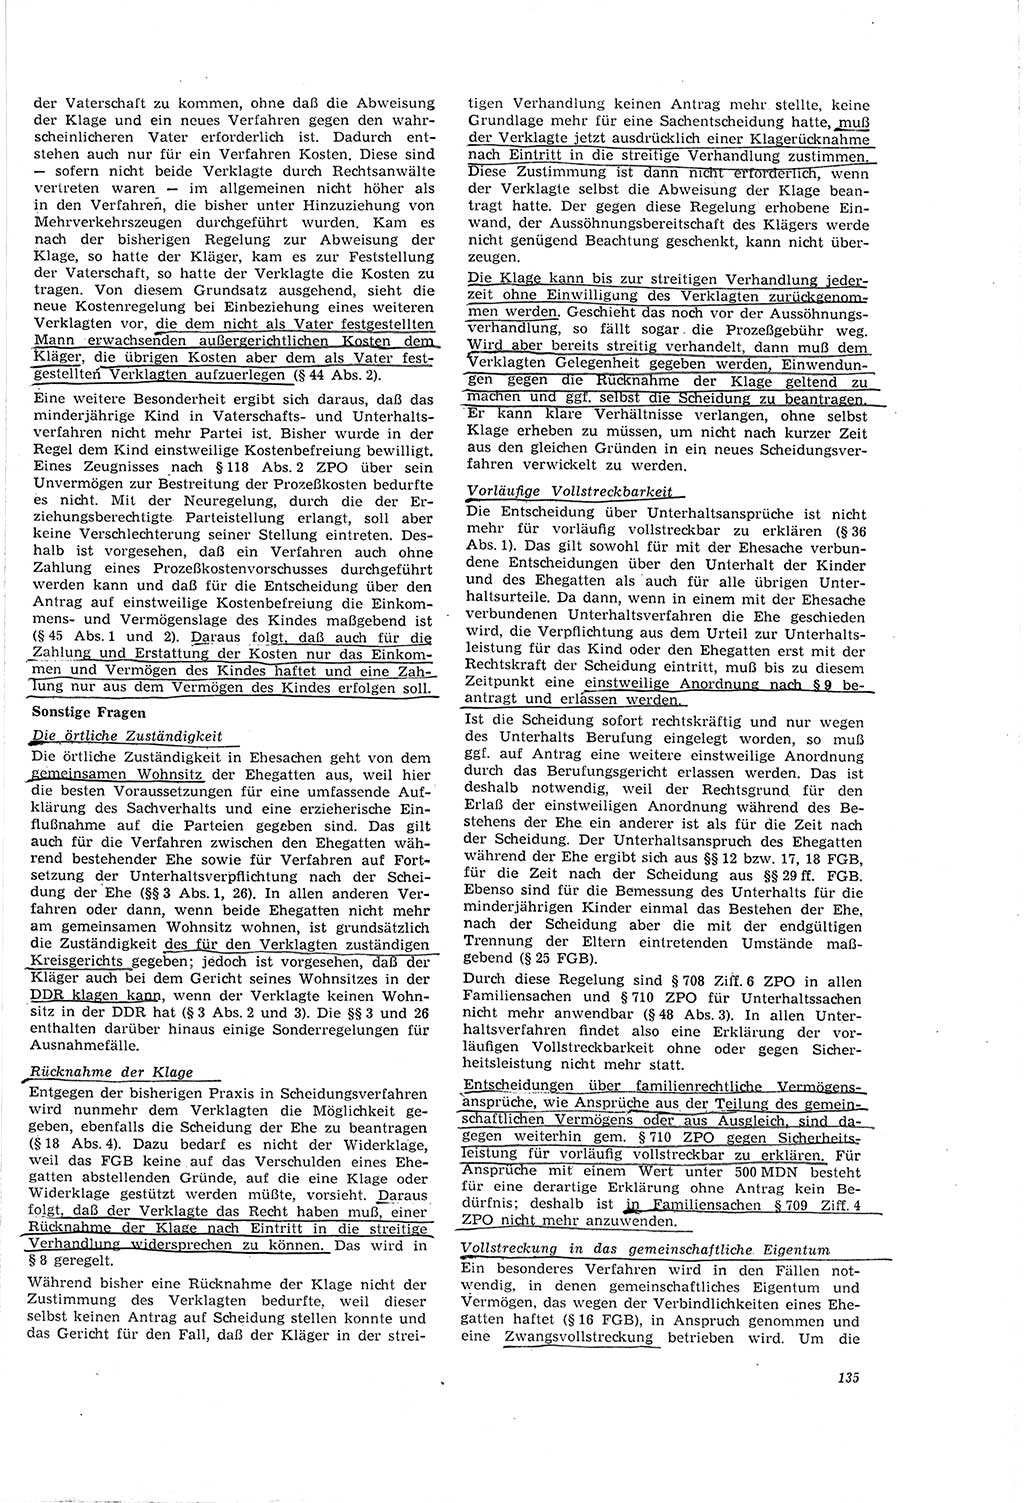 Neue Justiz (NJ), Zeitschrift für Recht und Rechtswissenschaft [Deutsche Demokratische Republik (DDR)], 20. Jahrgang 1966, Seite 135 (NJ DDR 1966, S. 135)